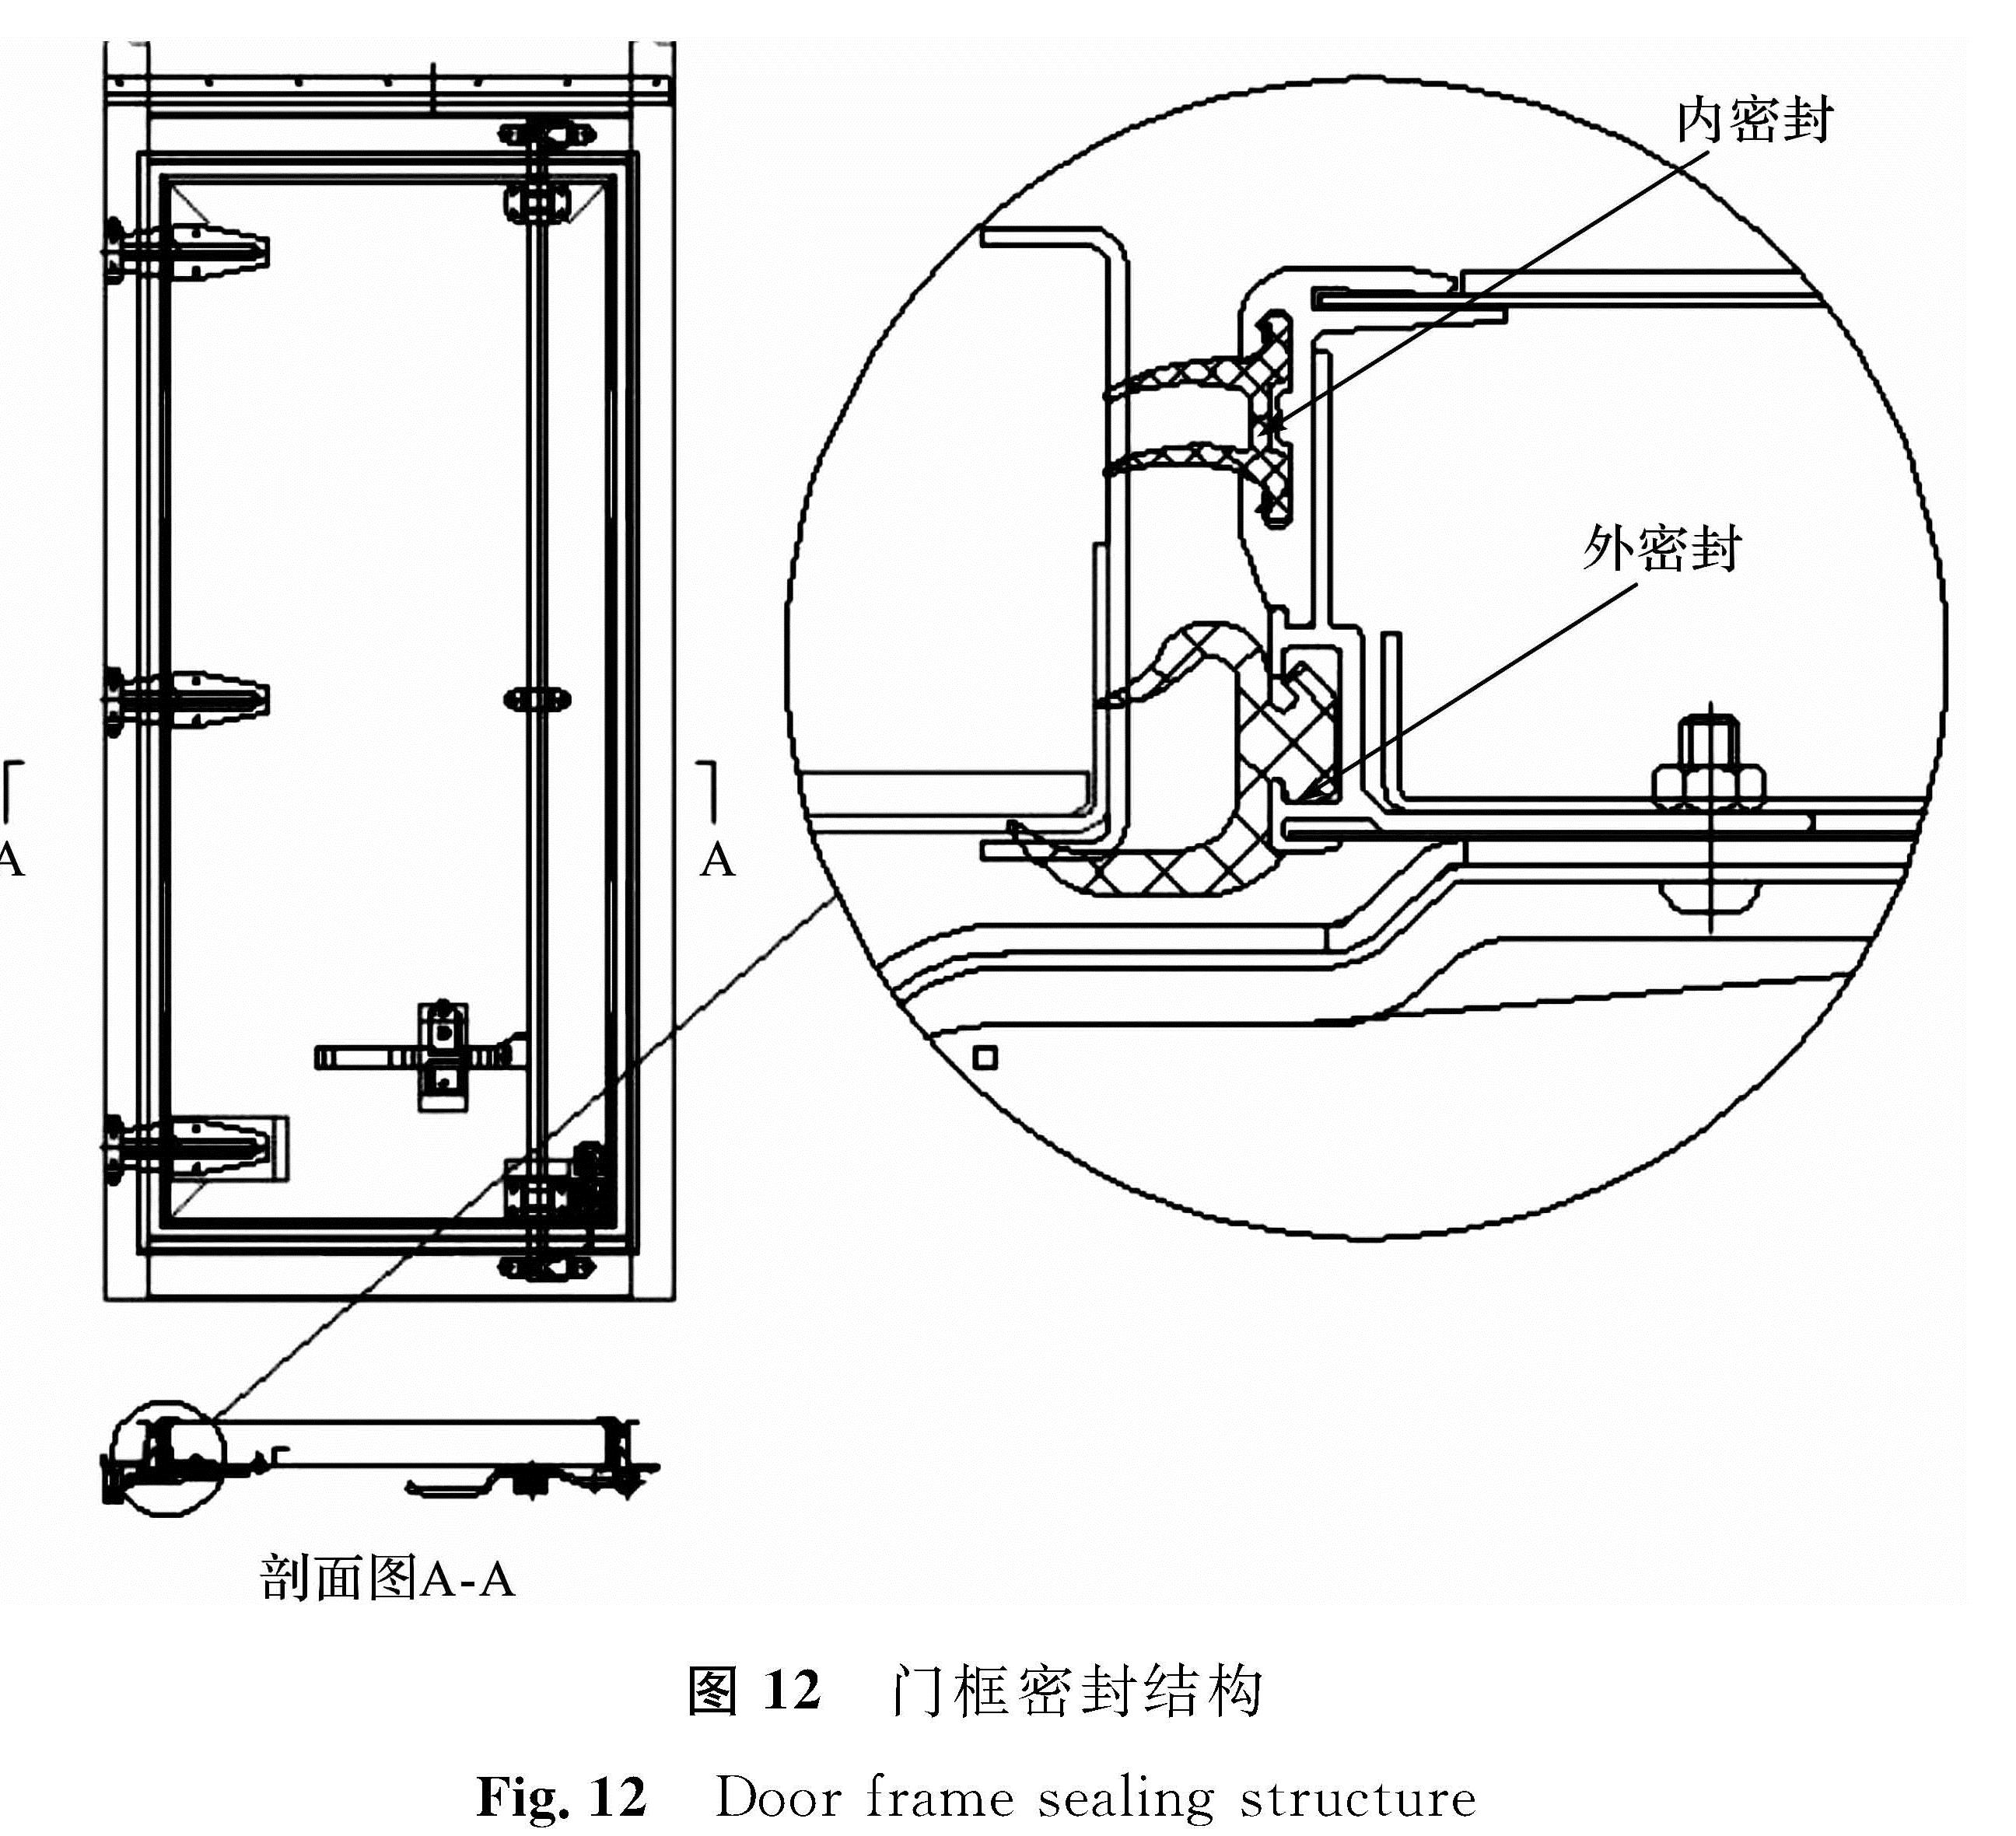 图 12 门框密封结构<br/>Fig.12 Door frame sealing structure